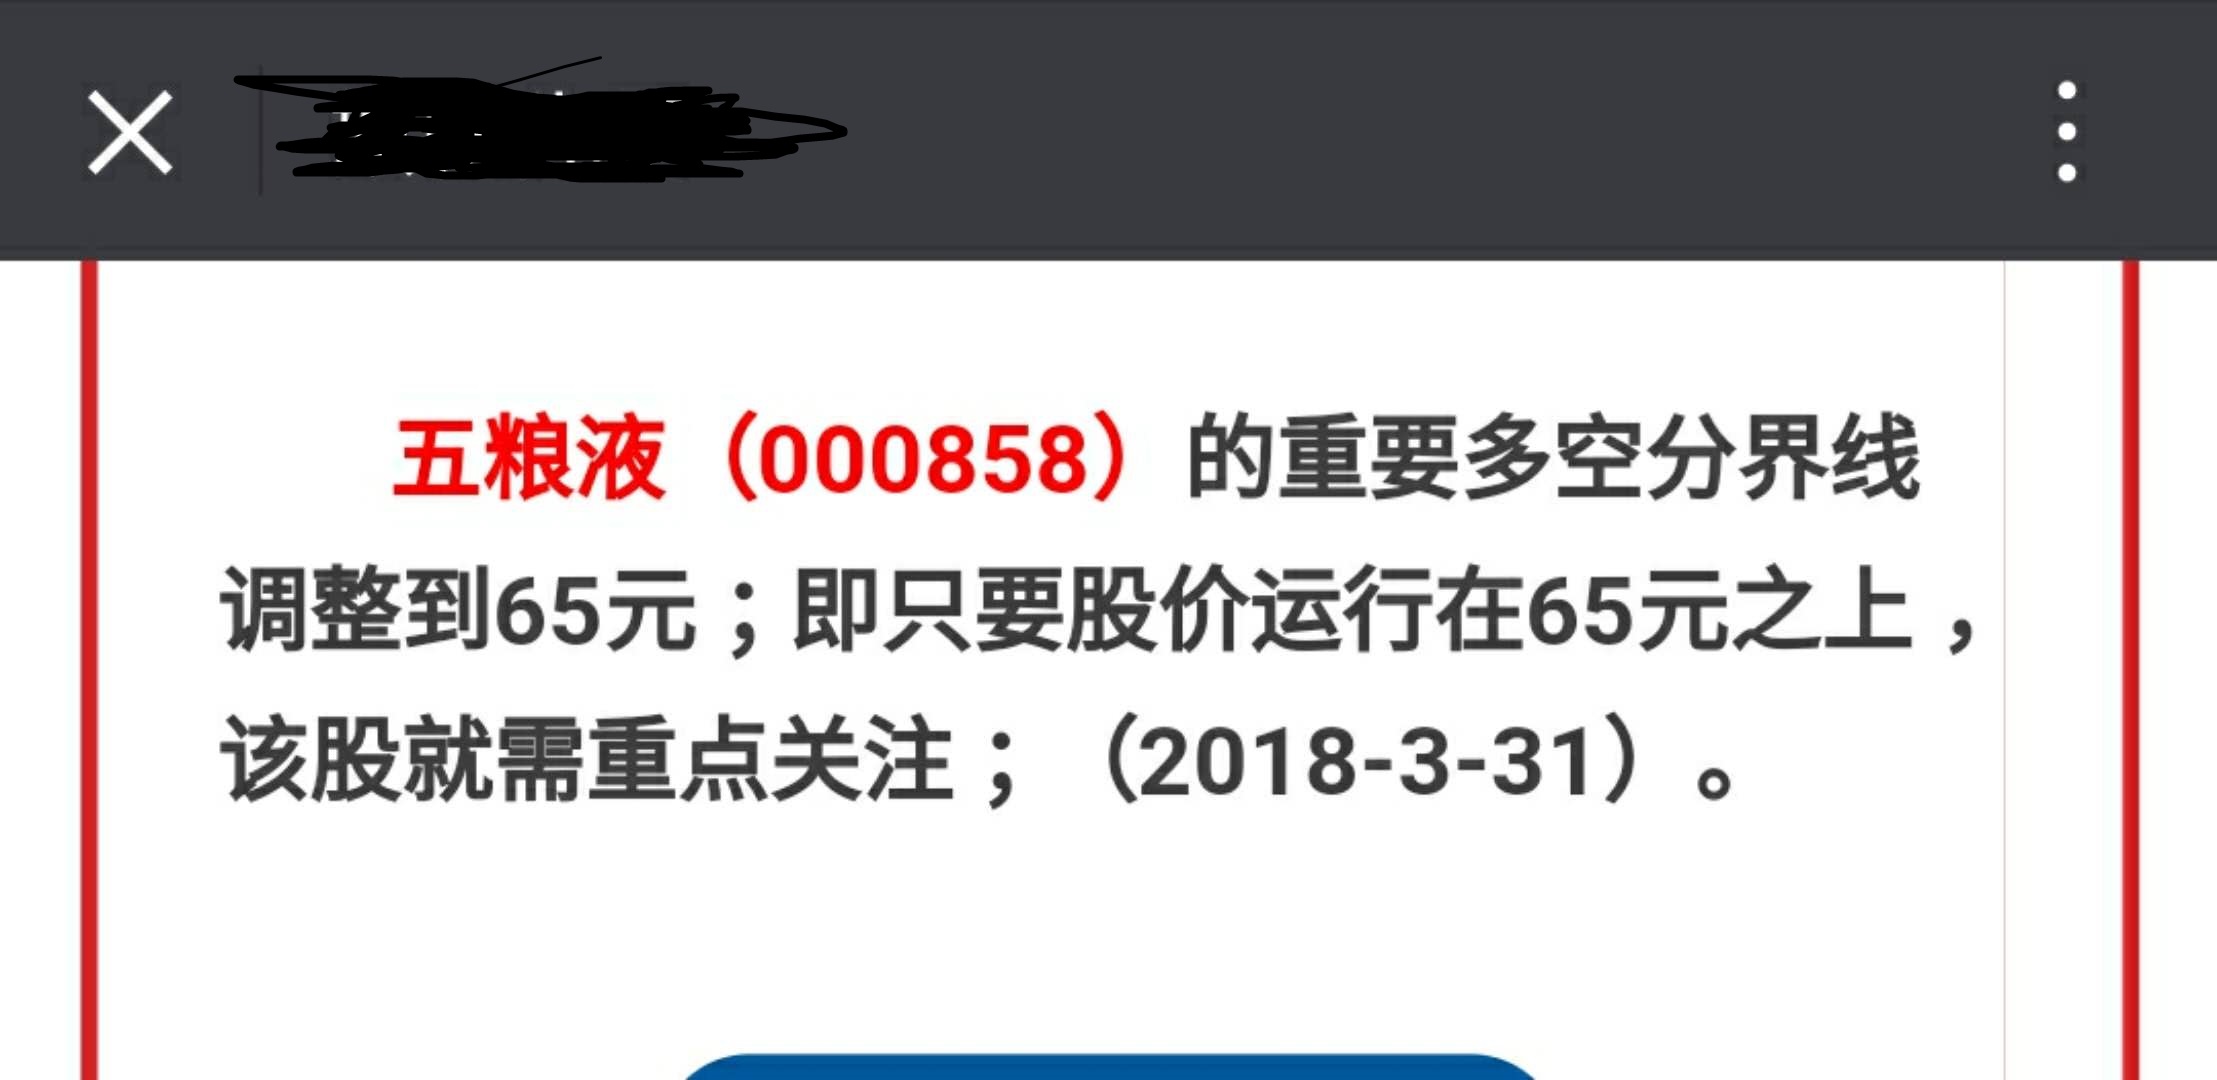 3月31日 调整五粮液众多空线 65元.jpg